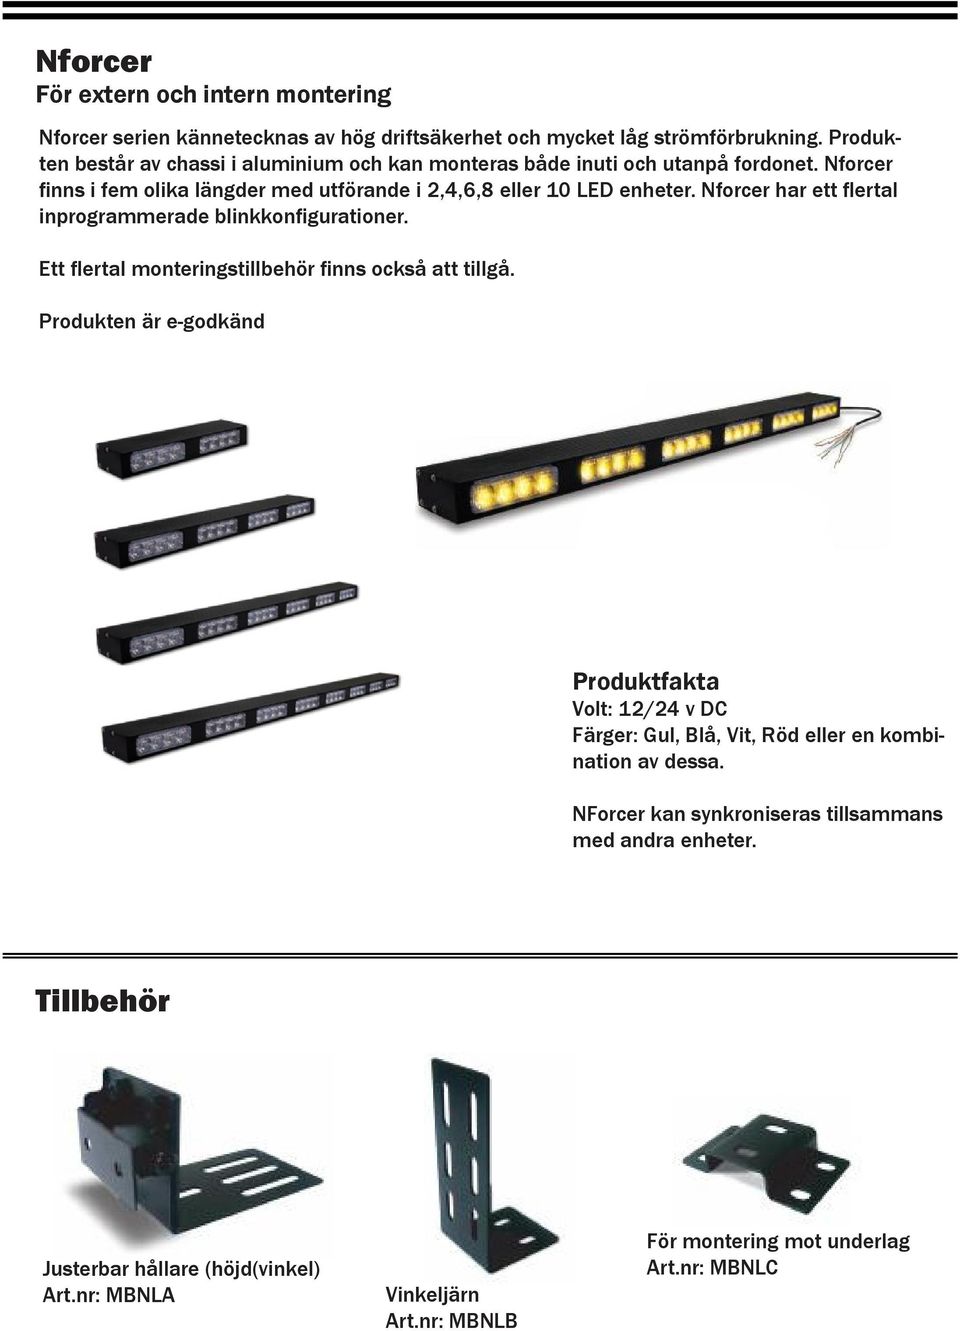 Nforcer finns i fem olika längder med utförande i 2,4,6,8 eller 10 LED enheter. Nforcer har ett flertal inprogrammerade blinkkonfigurationer.